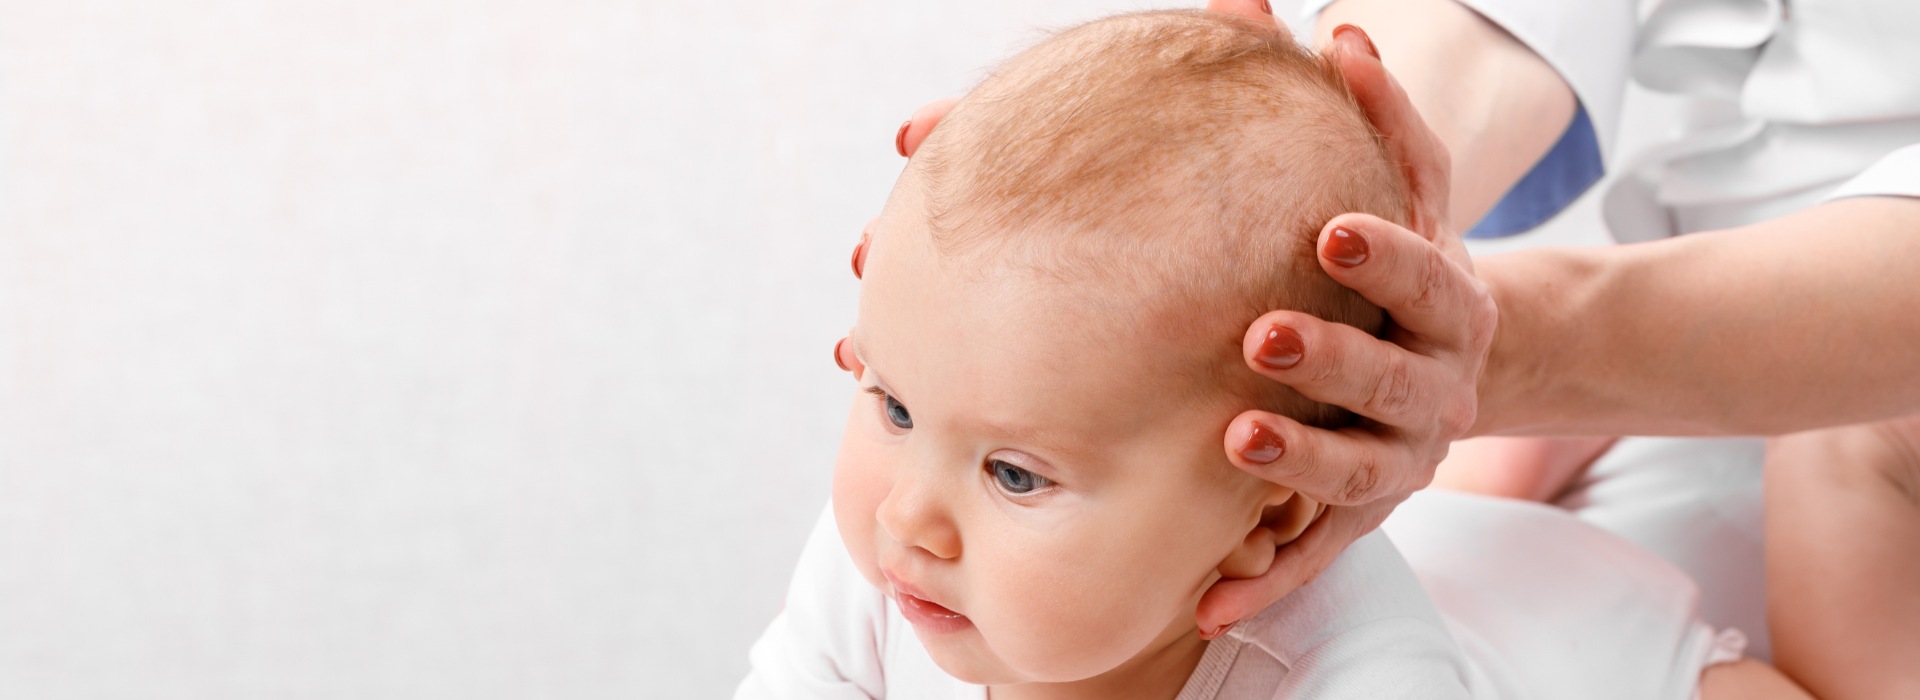 טיפולי אוסטאופתיה לתינוקות